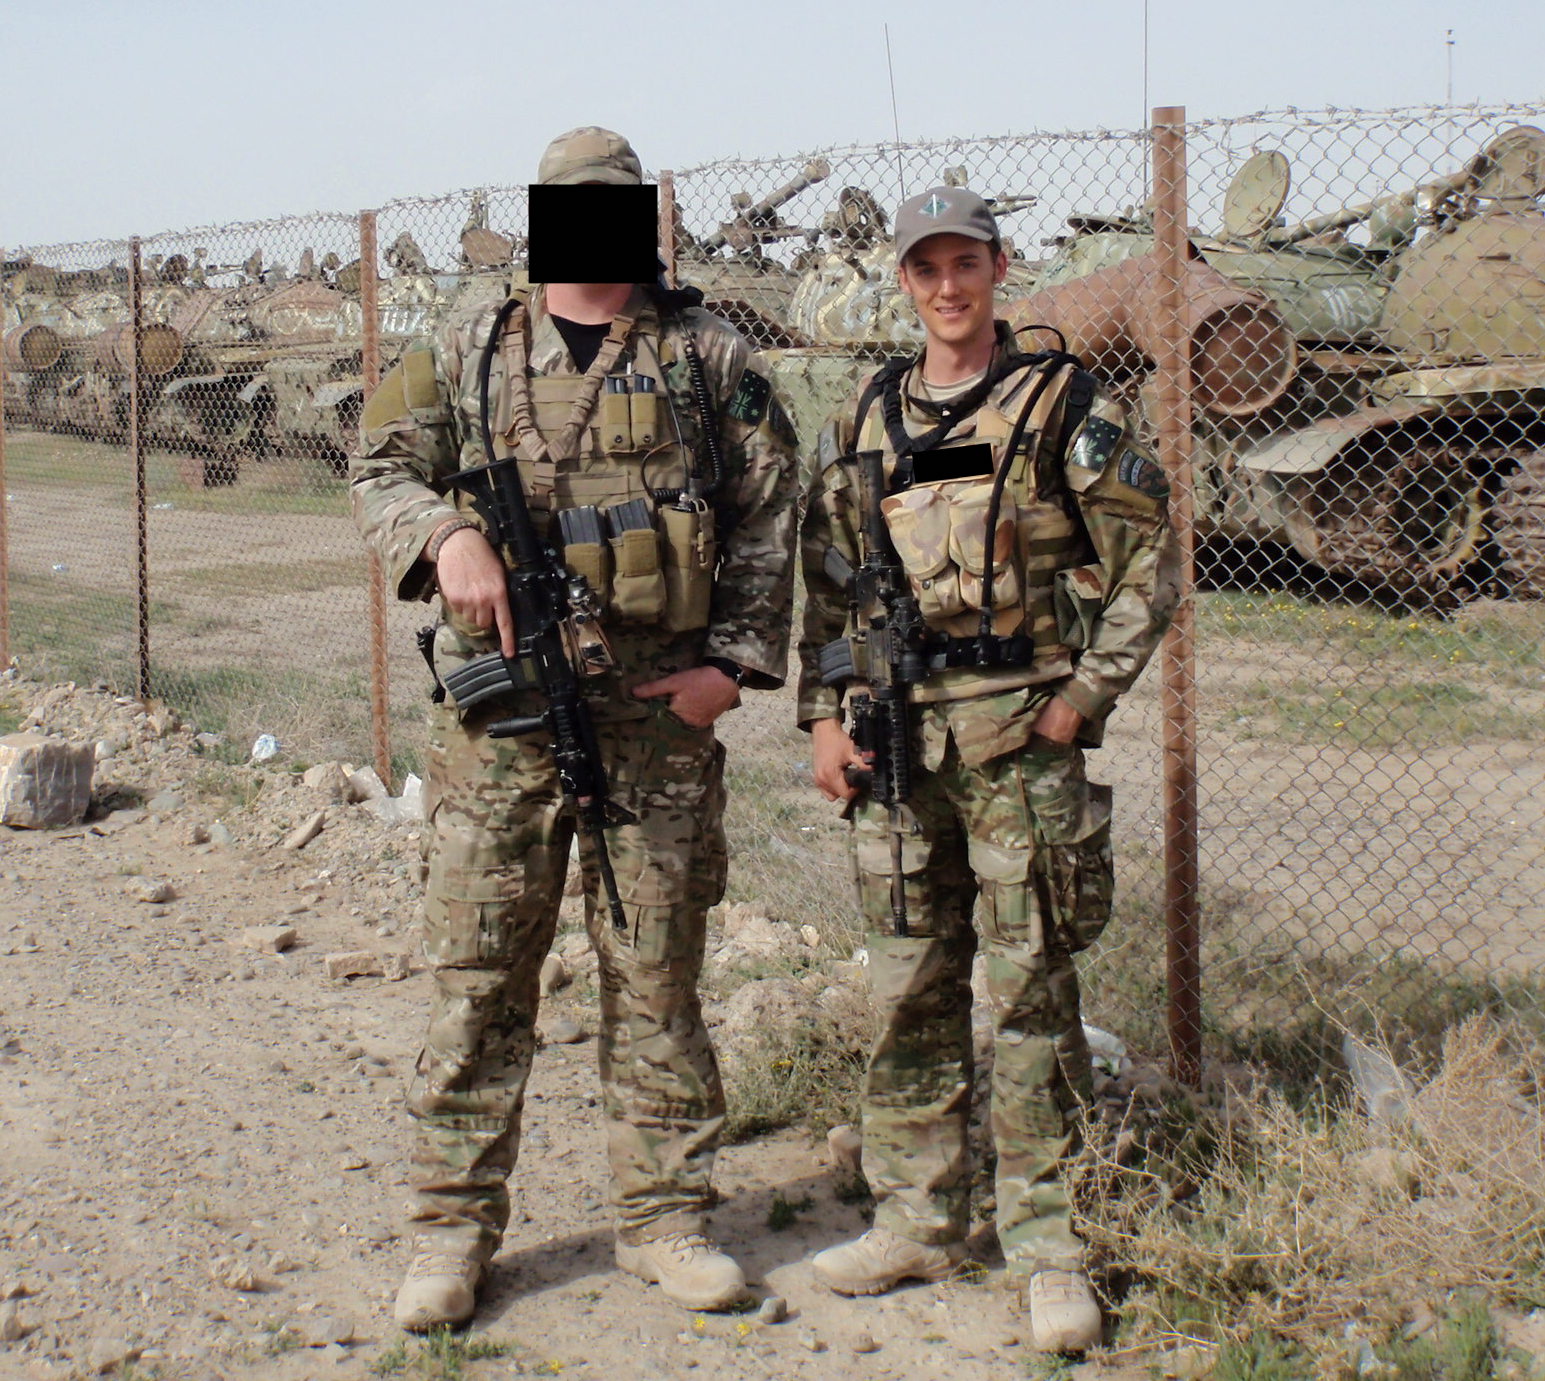 Greg in Afghanistan